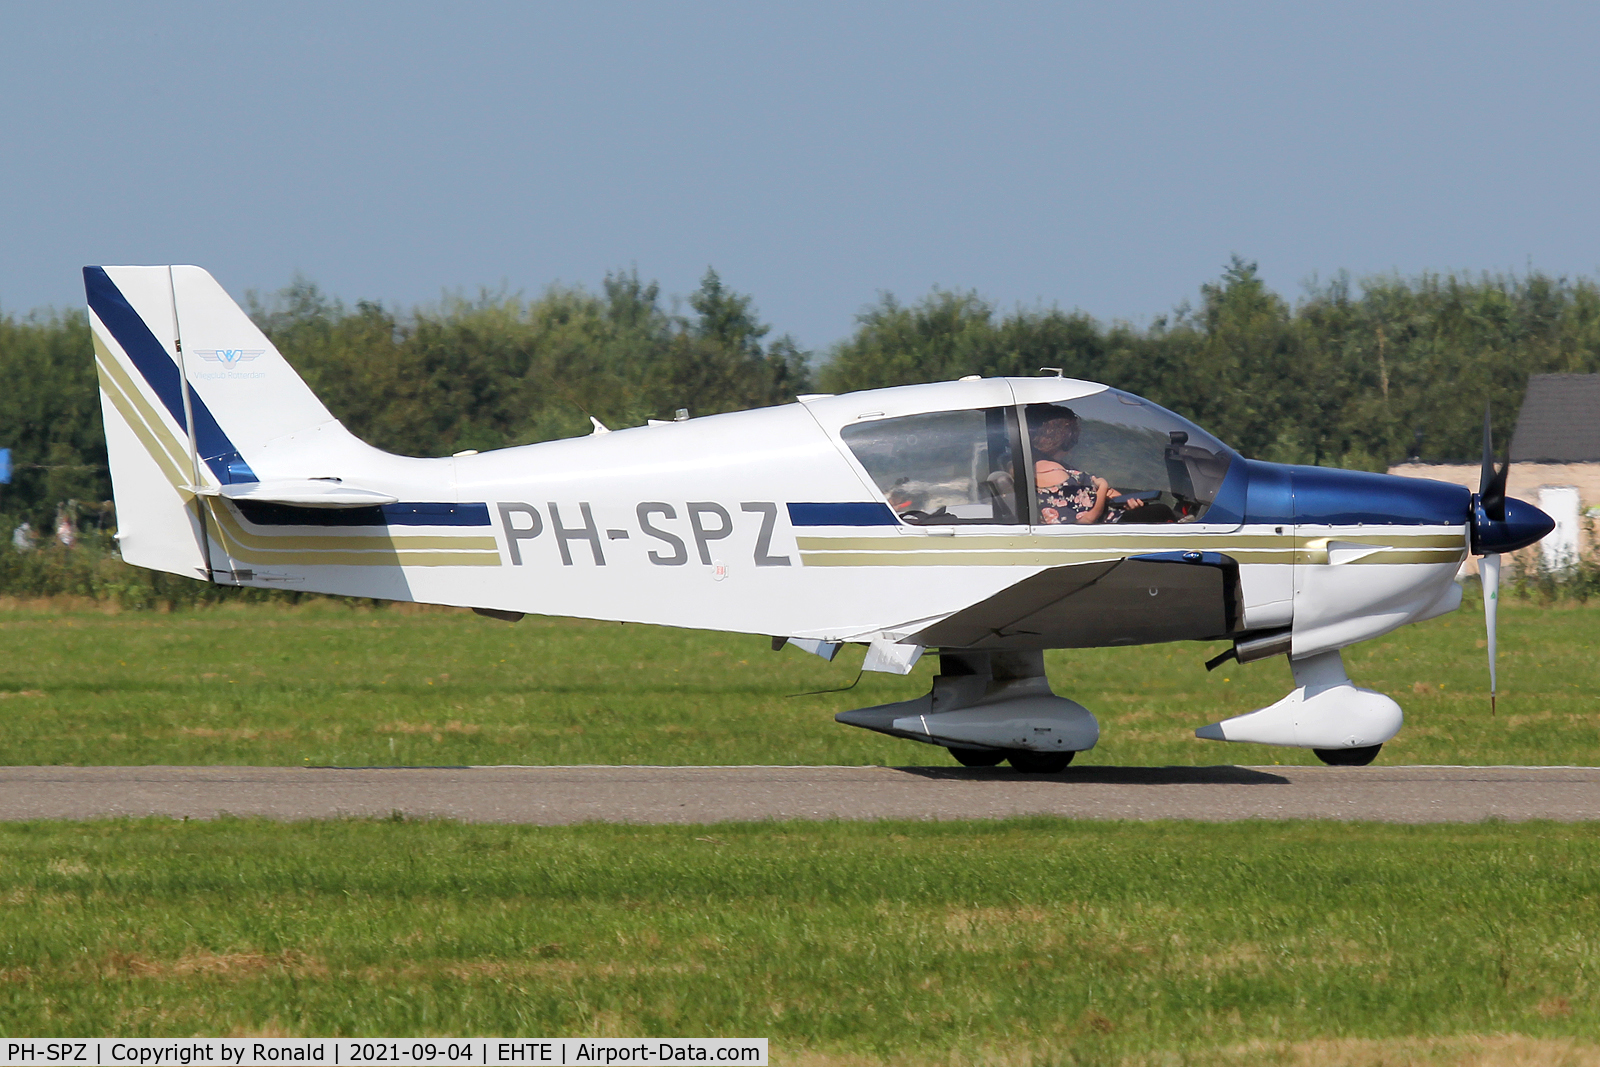 PH-SPZ, 2006 Robin DR-400-140B Major C/N 2597, at teuge